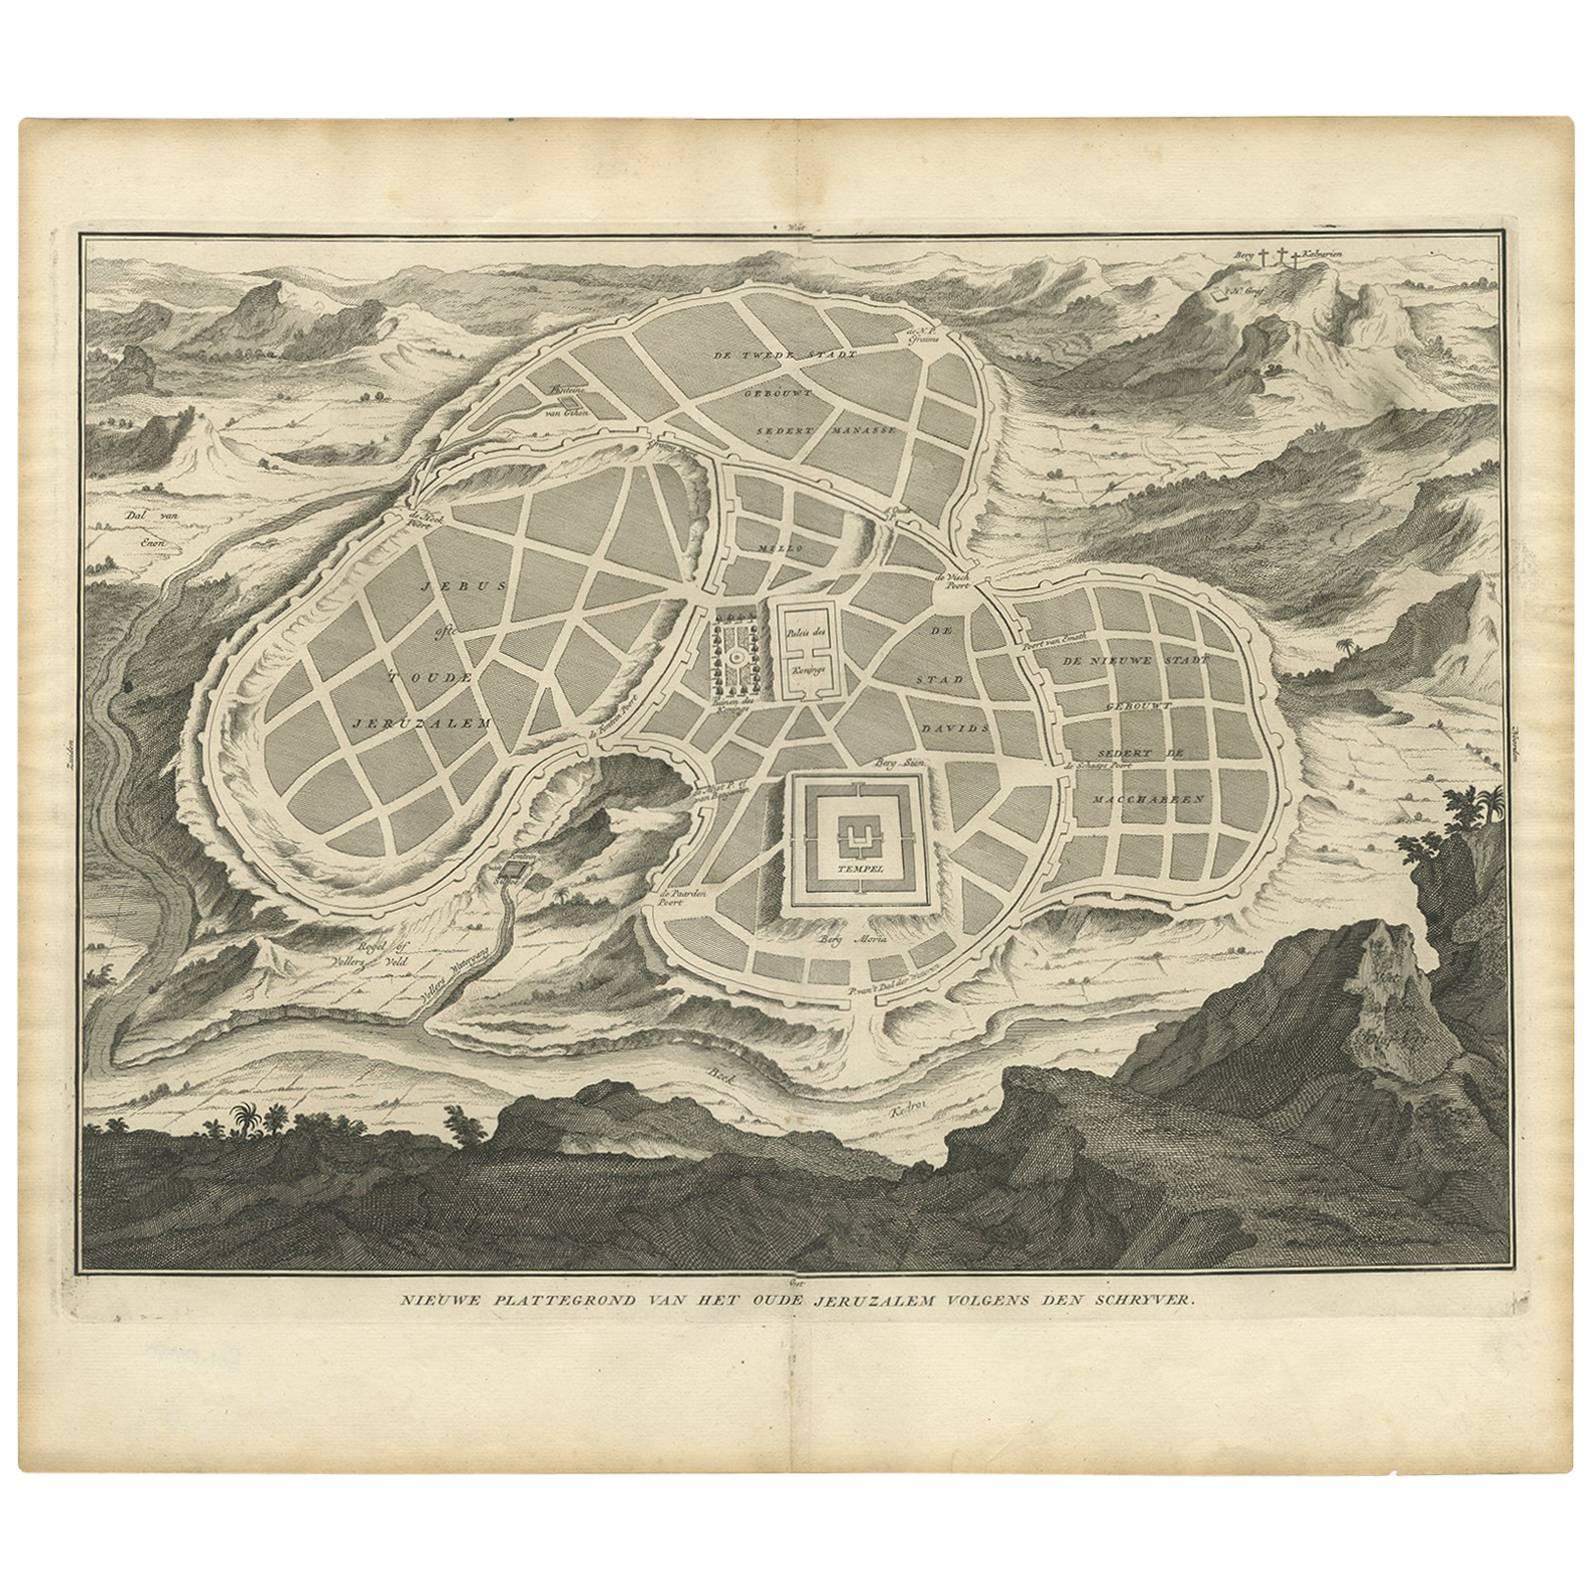 Carte ancienne de la ville antique de Jérusalem par A. Calmet, 1725